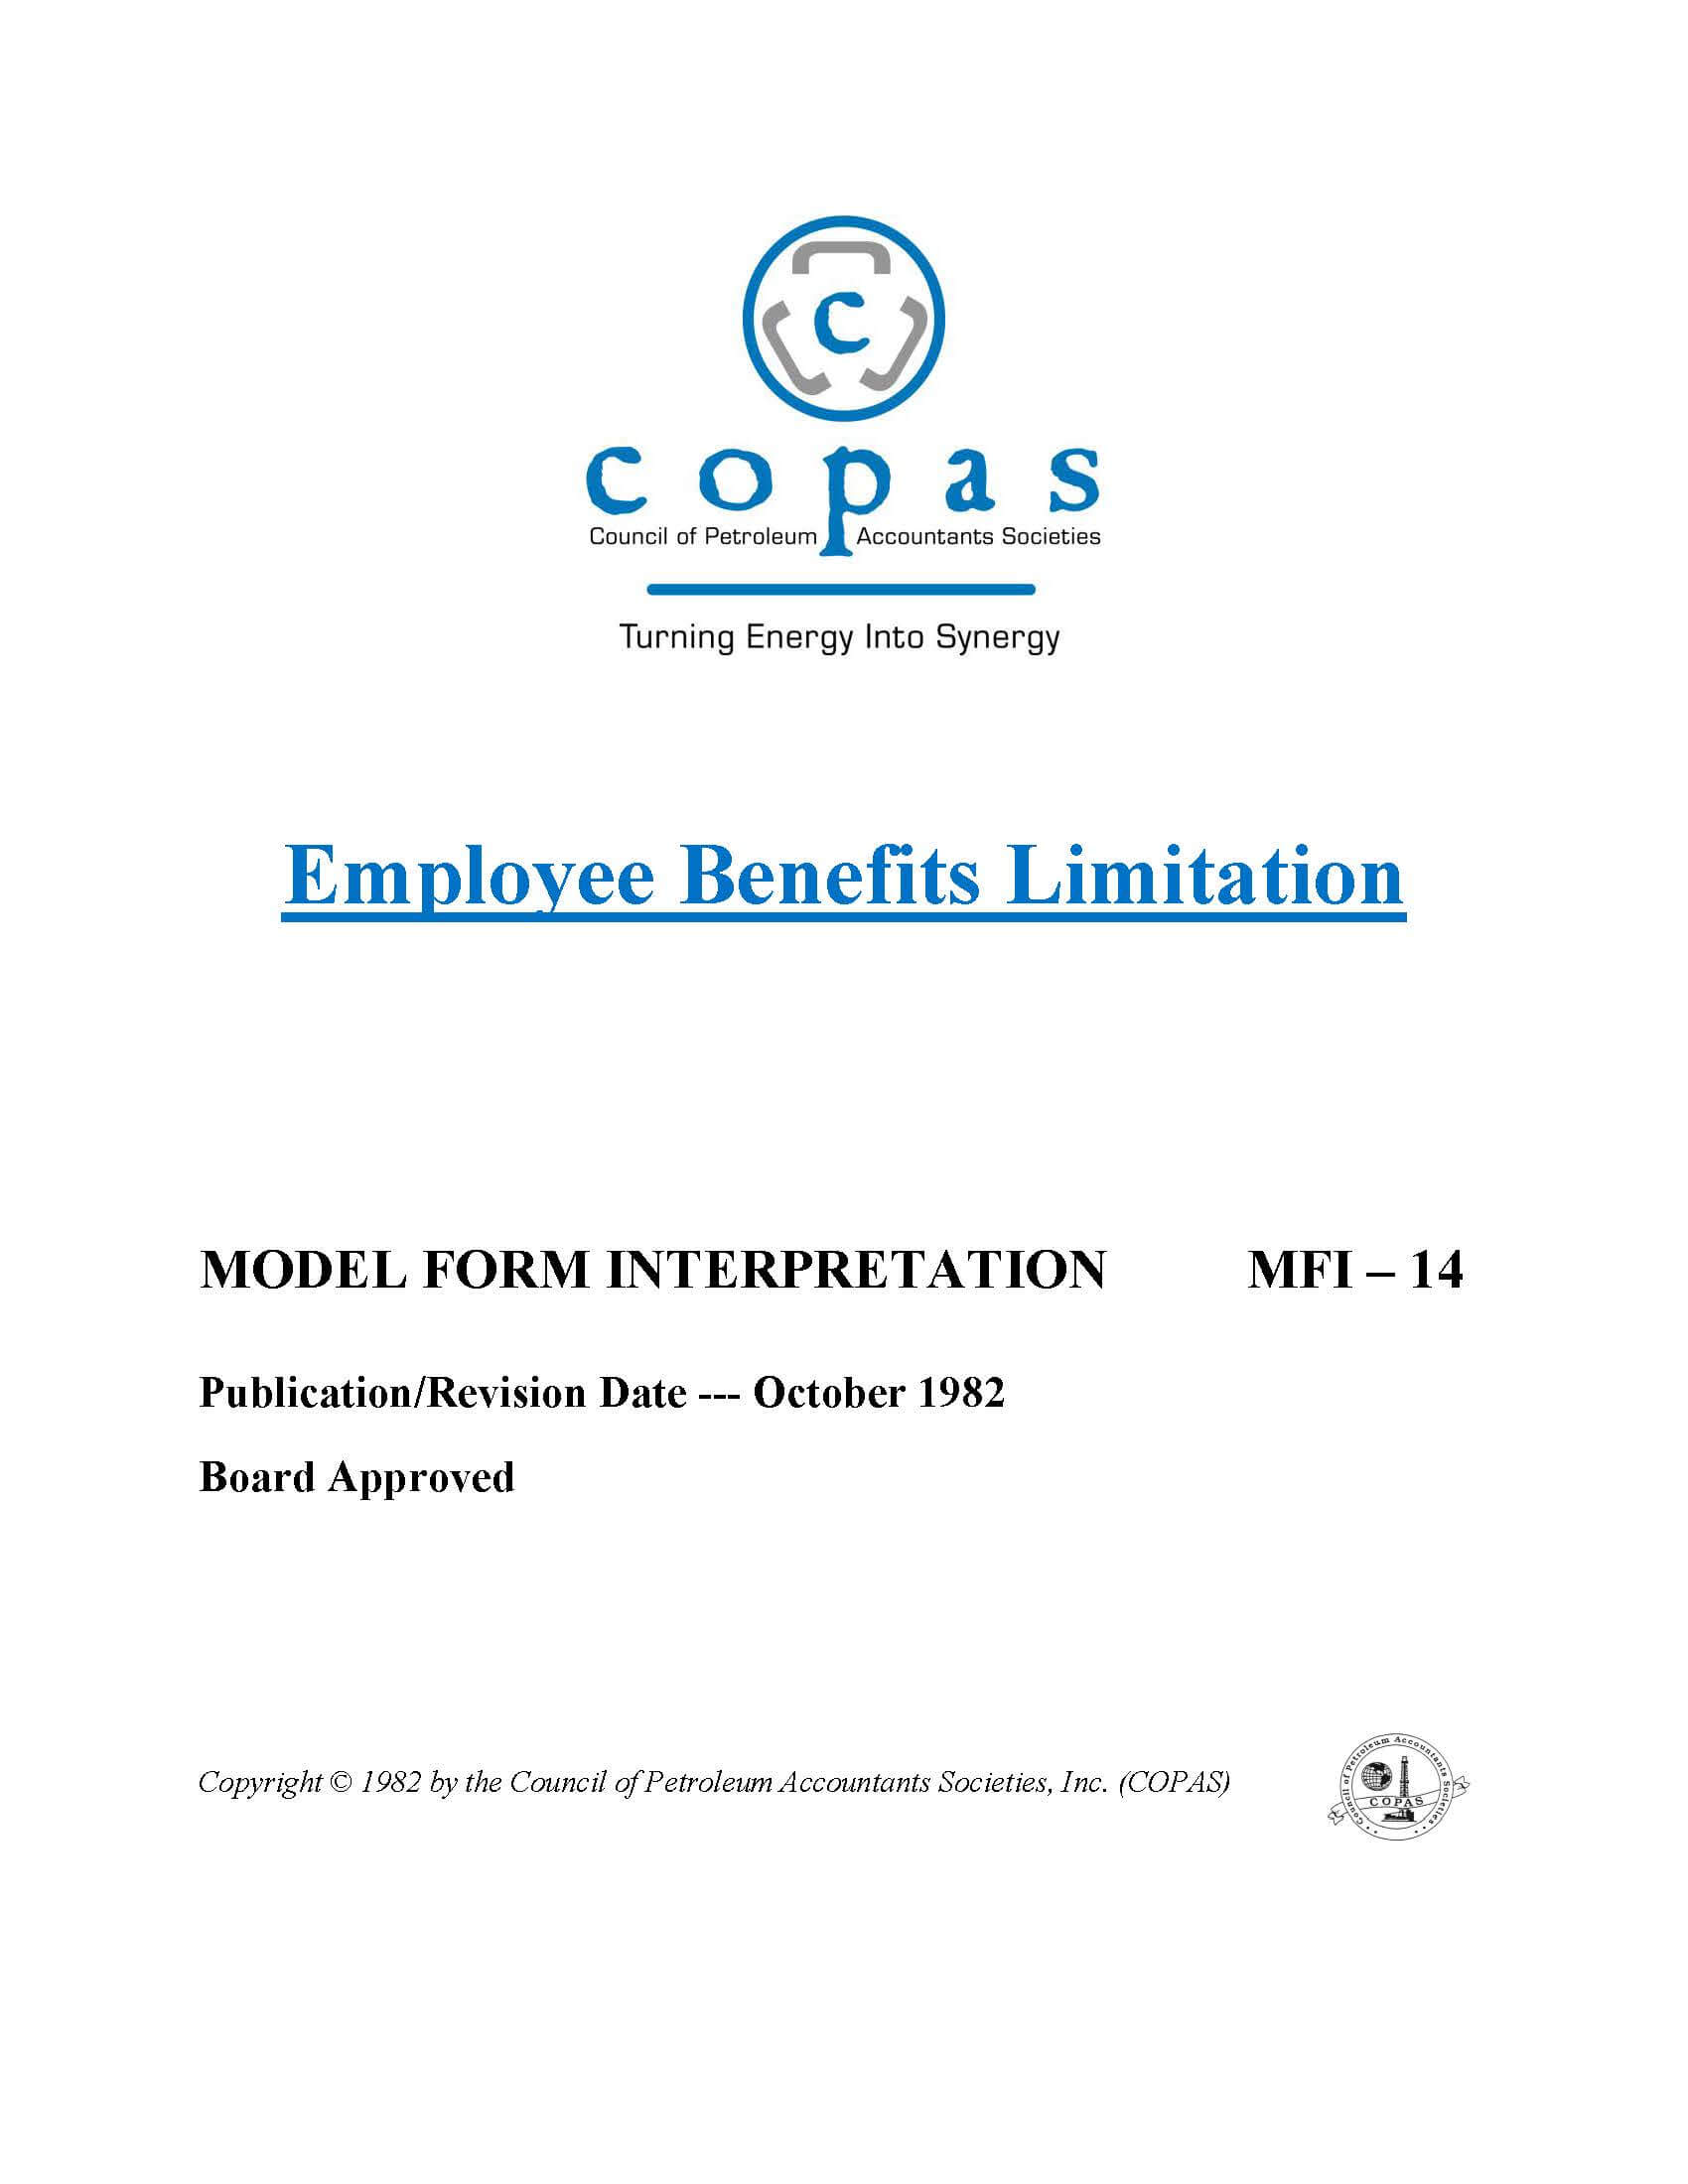 MFI-14 Employee Benefits Limitation